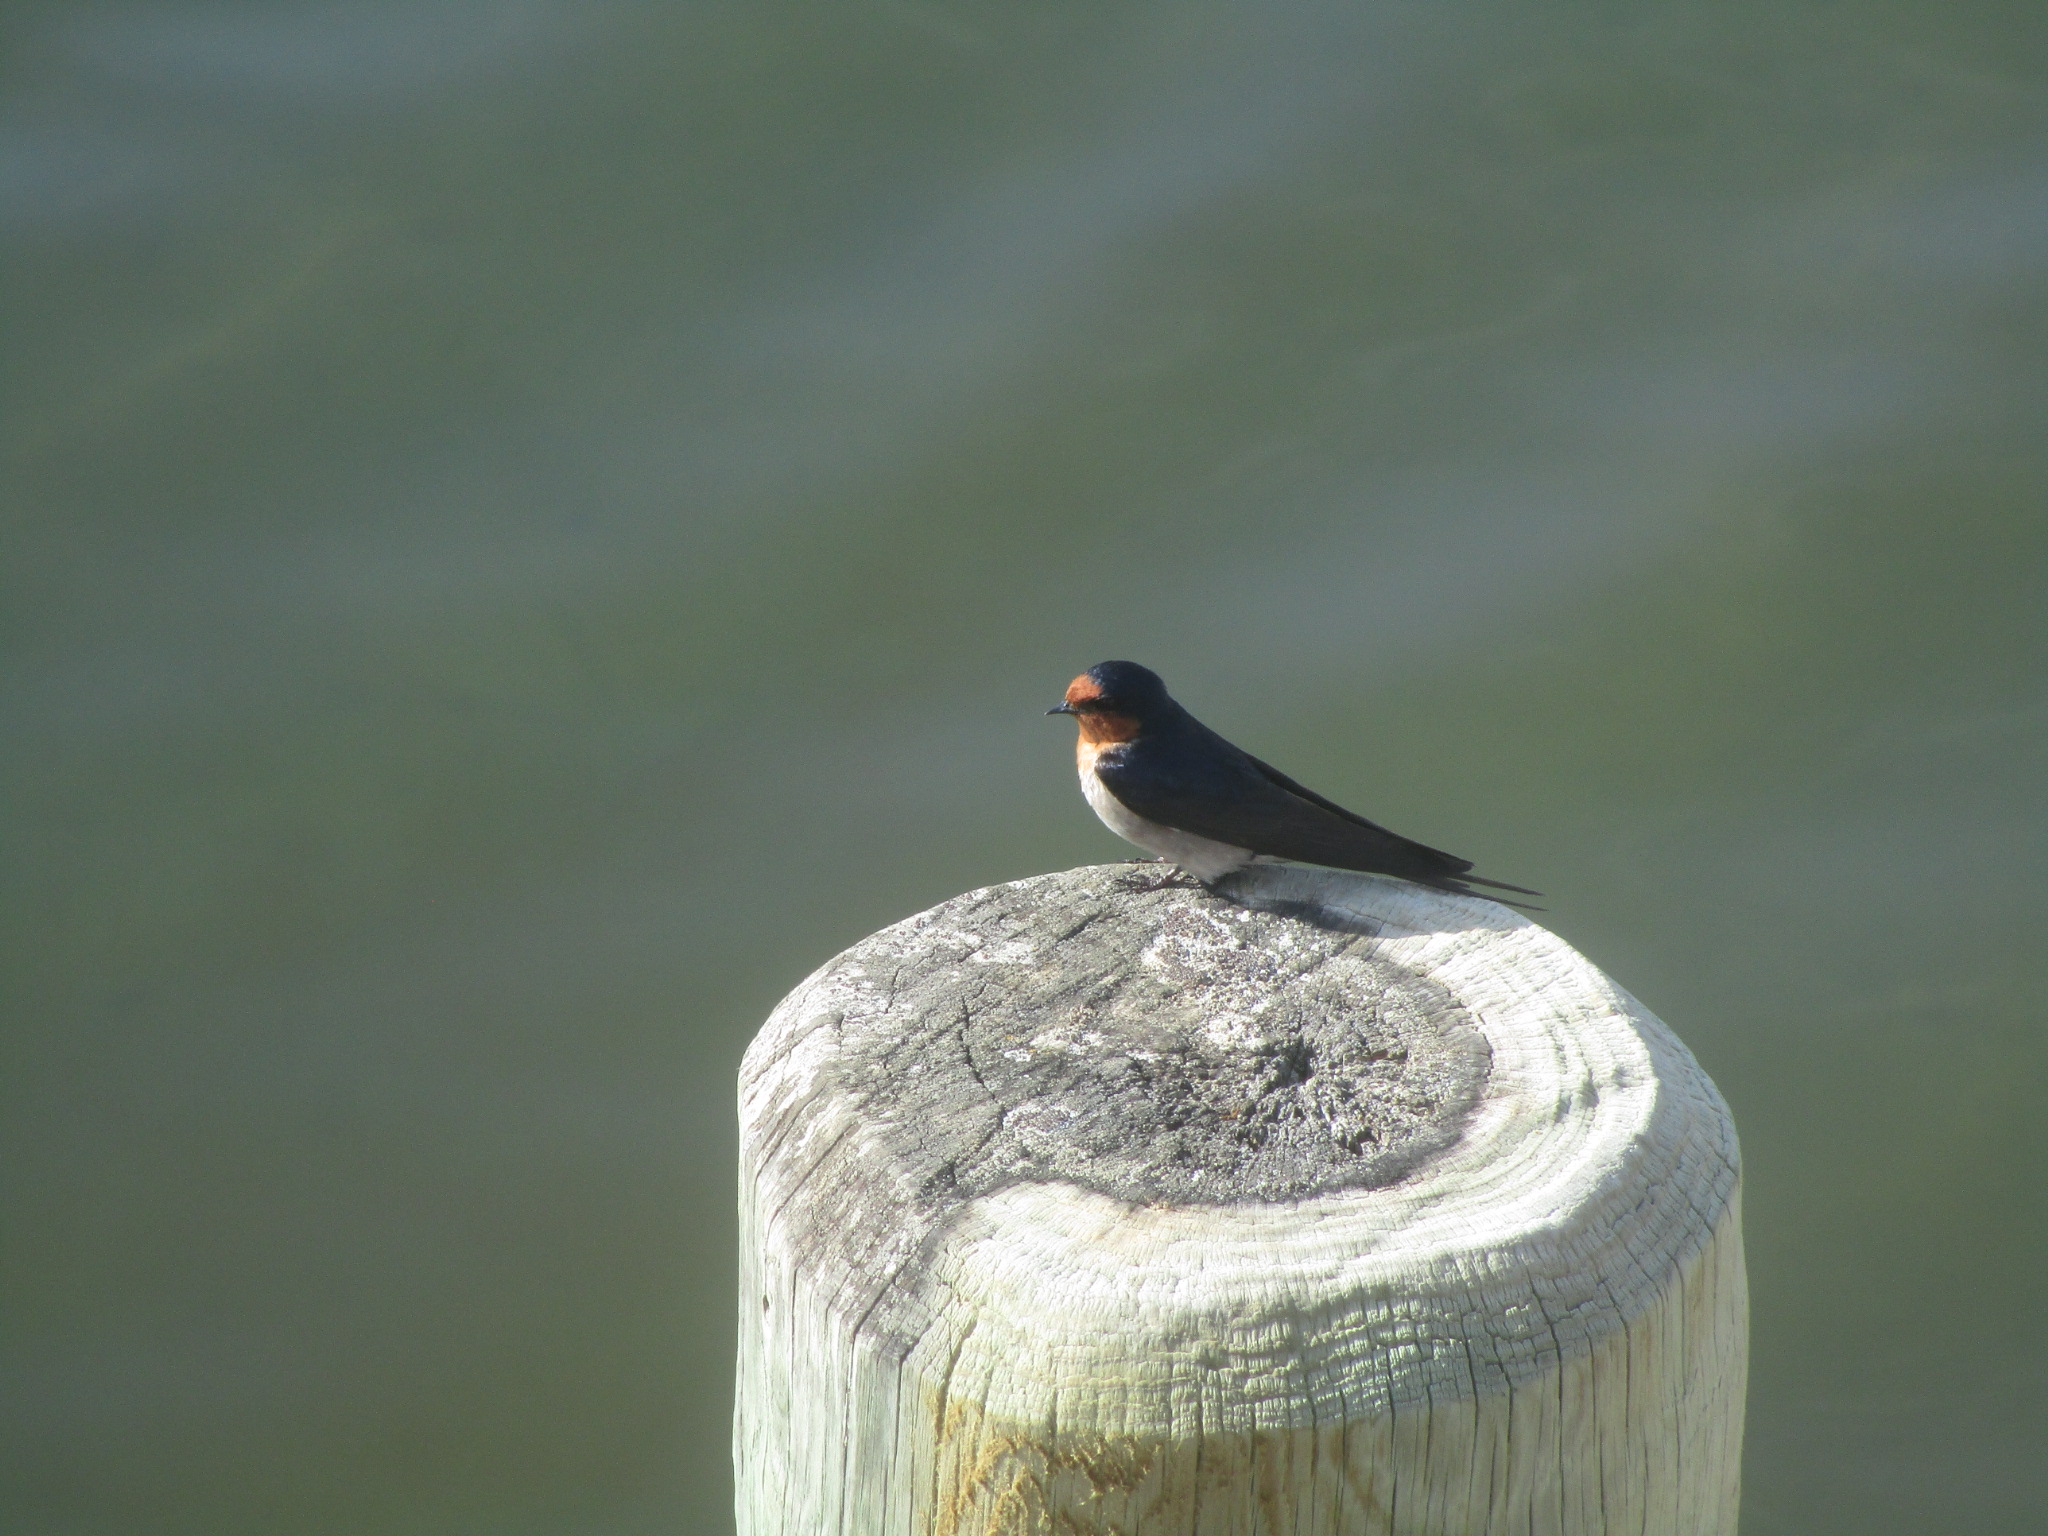 Small bird on wood